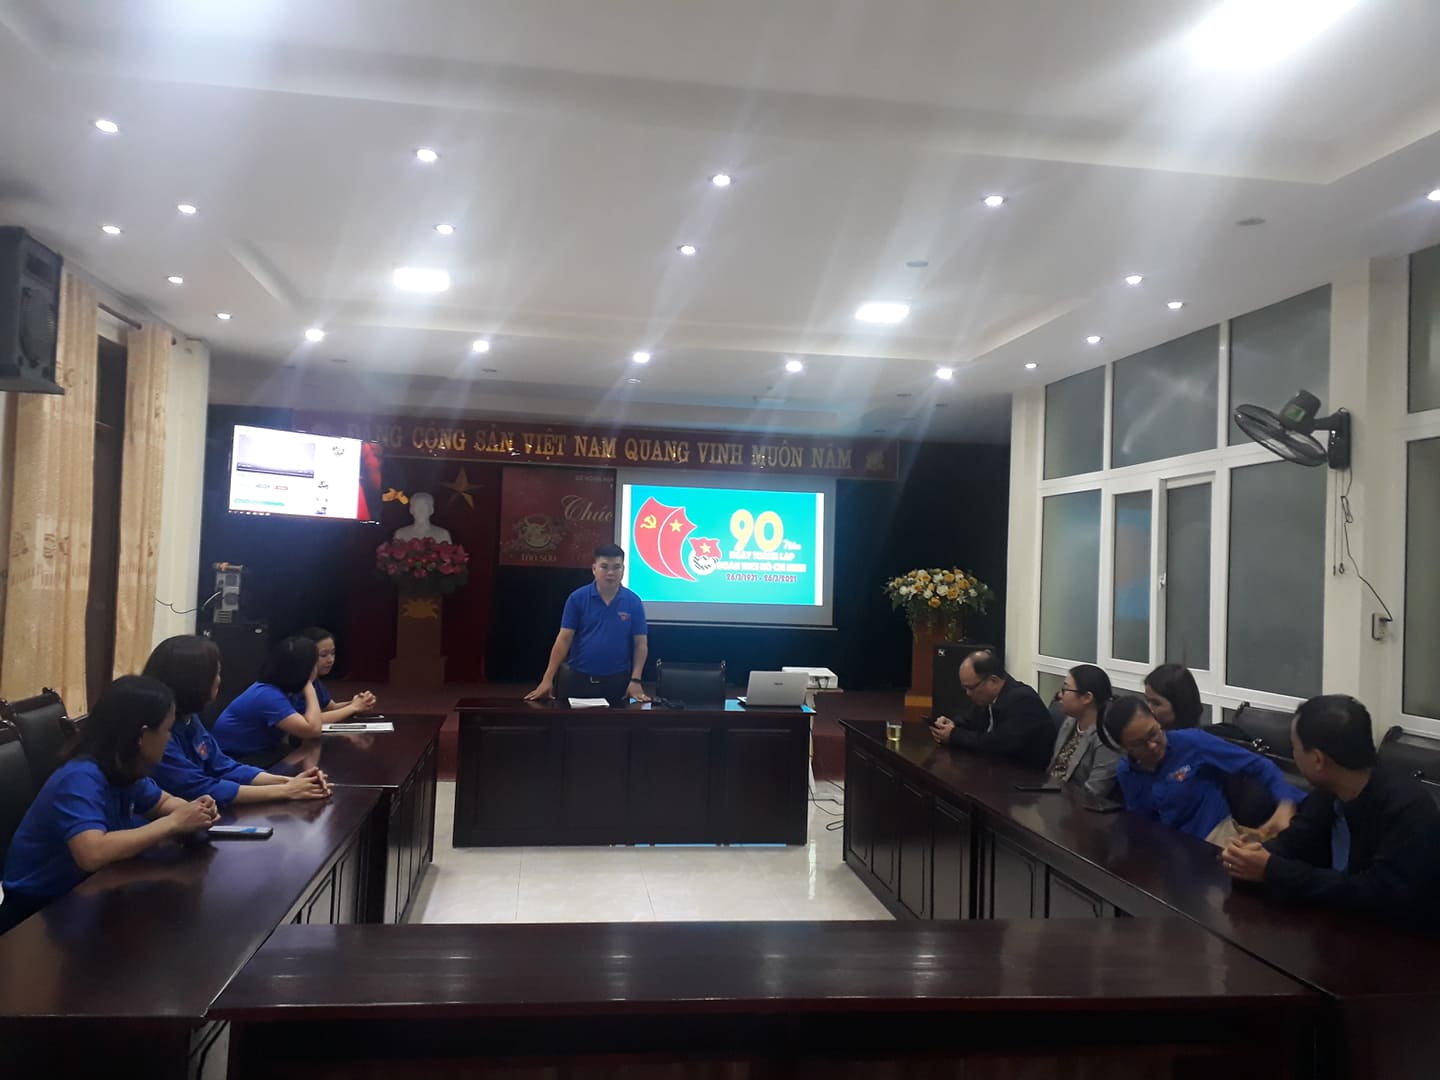 Đoàn thanh niên Trung tâm Khuyến Nông Nghệ An tổ chức sinh hoạt chính trị chủ đề “Tự hào người đoàn viên”